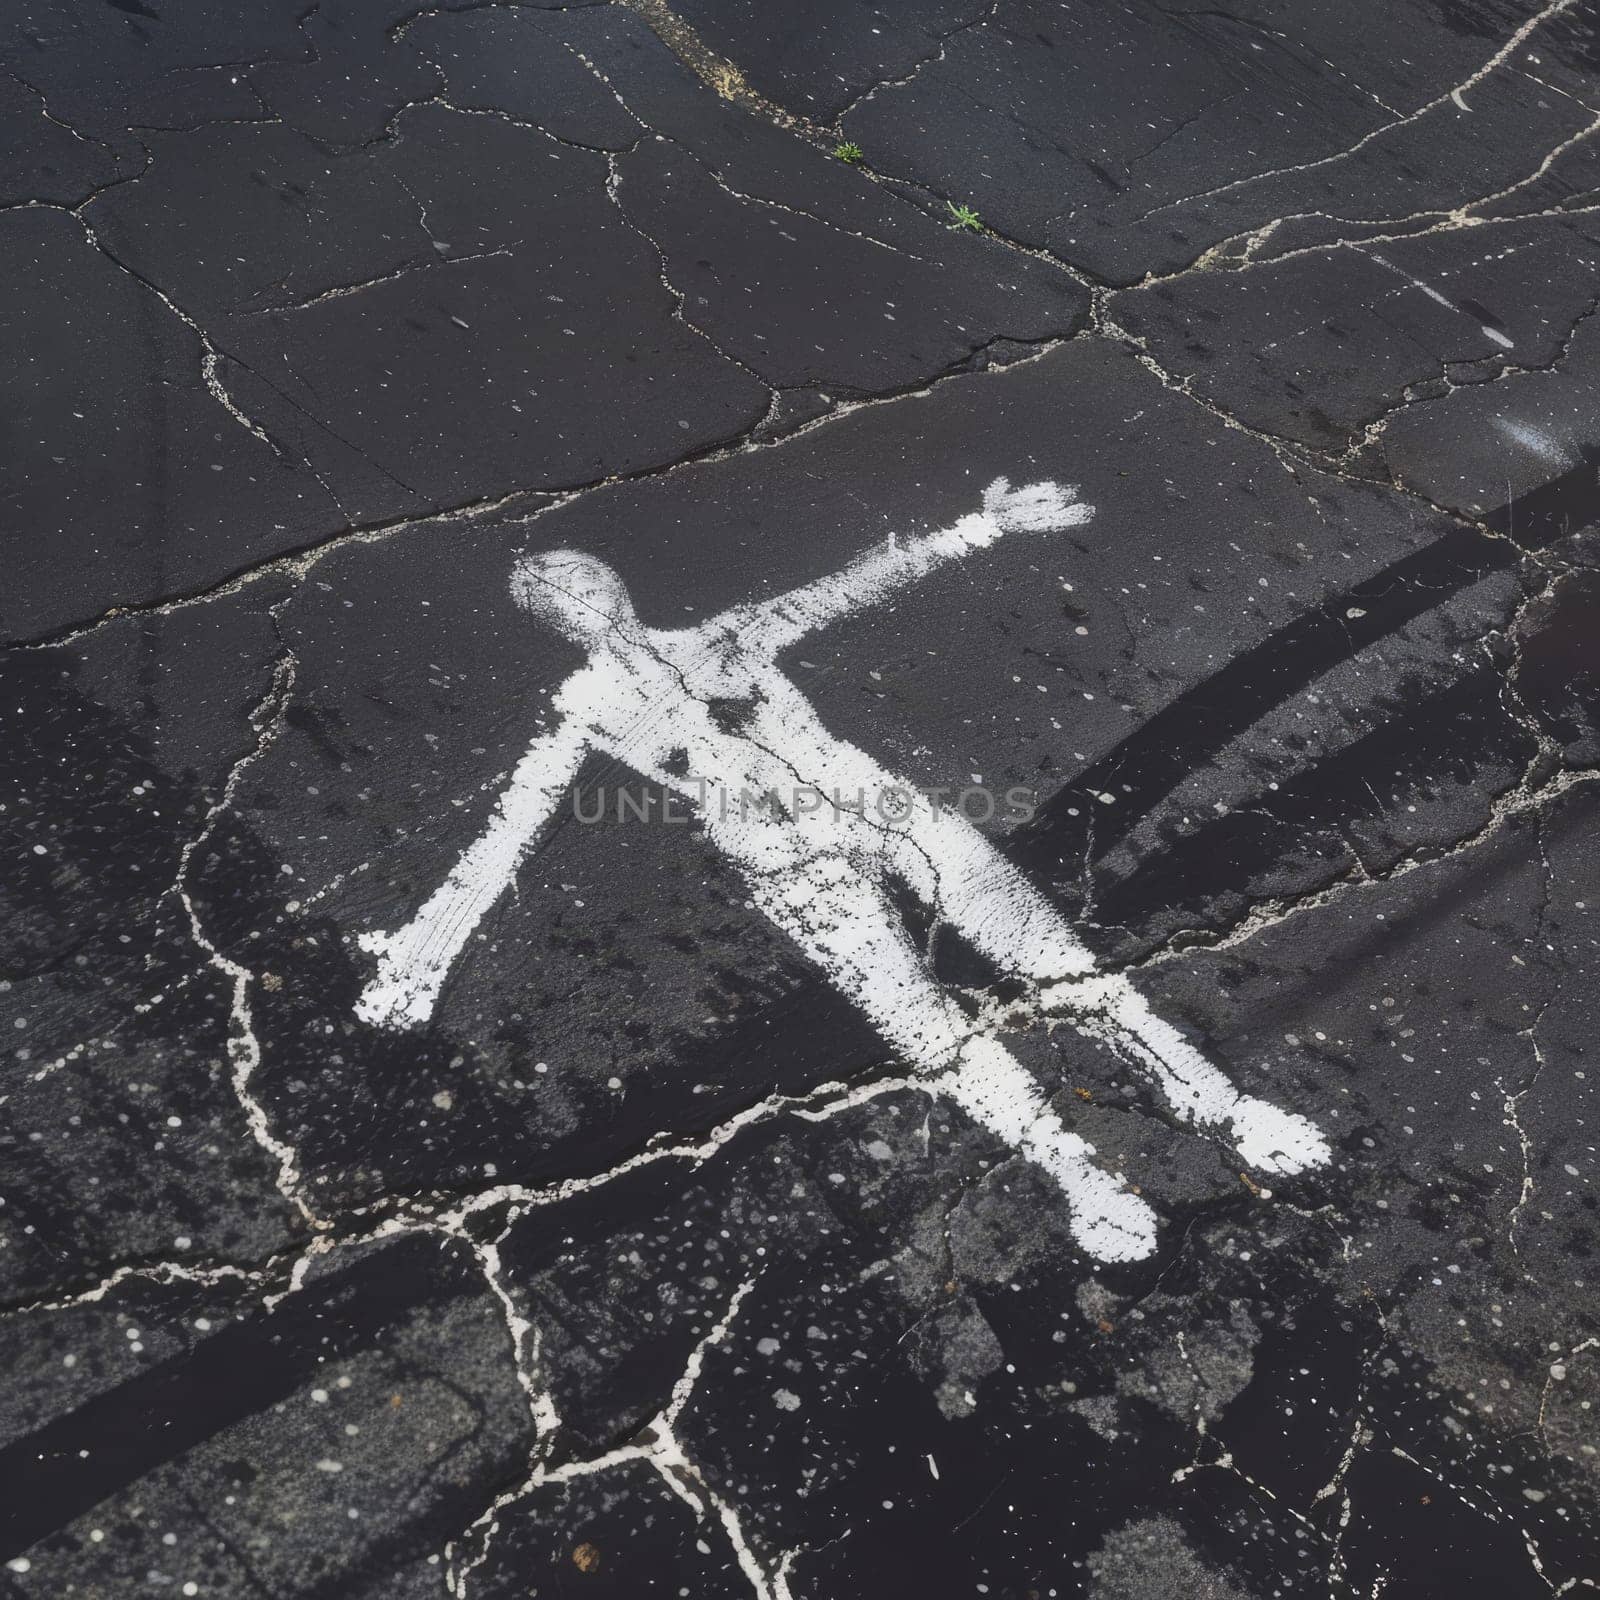 Chalk outline of a human figure on dark asphalt, reminiscent of a crime scene